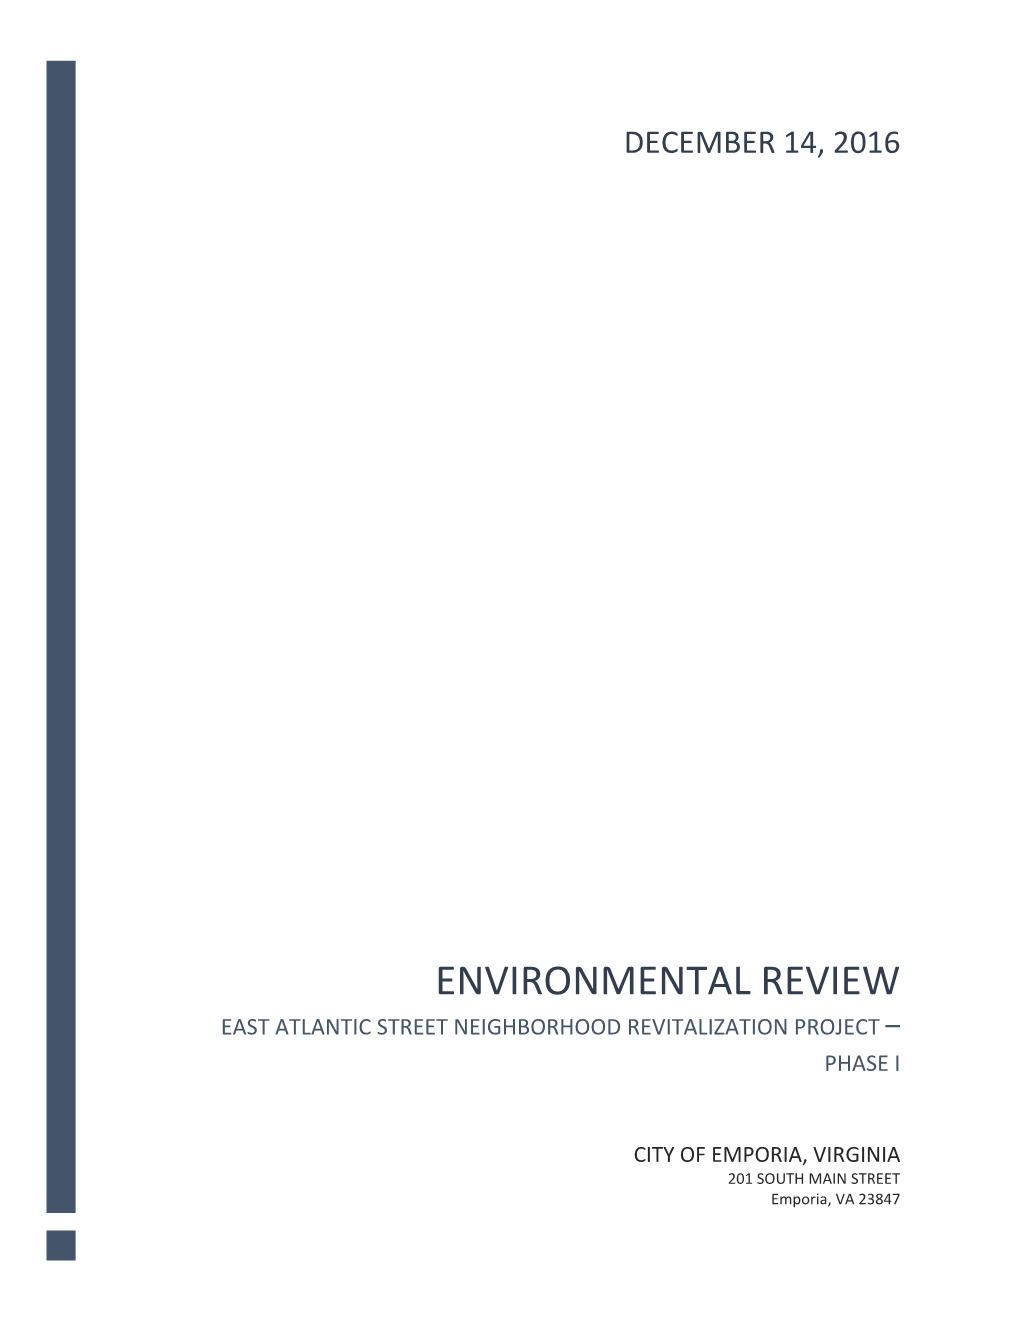 East Atlantic Environmental Review